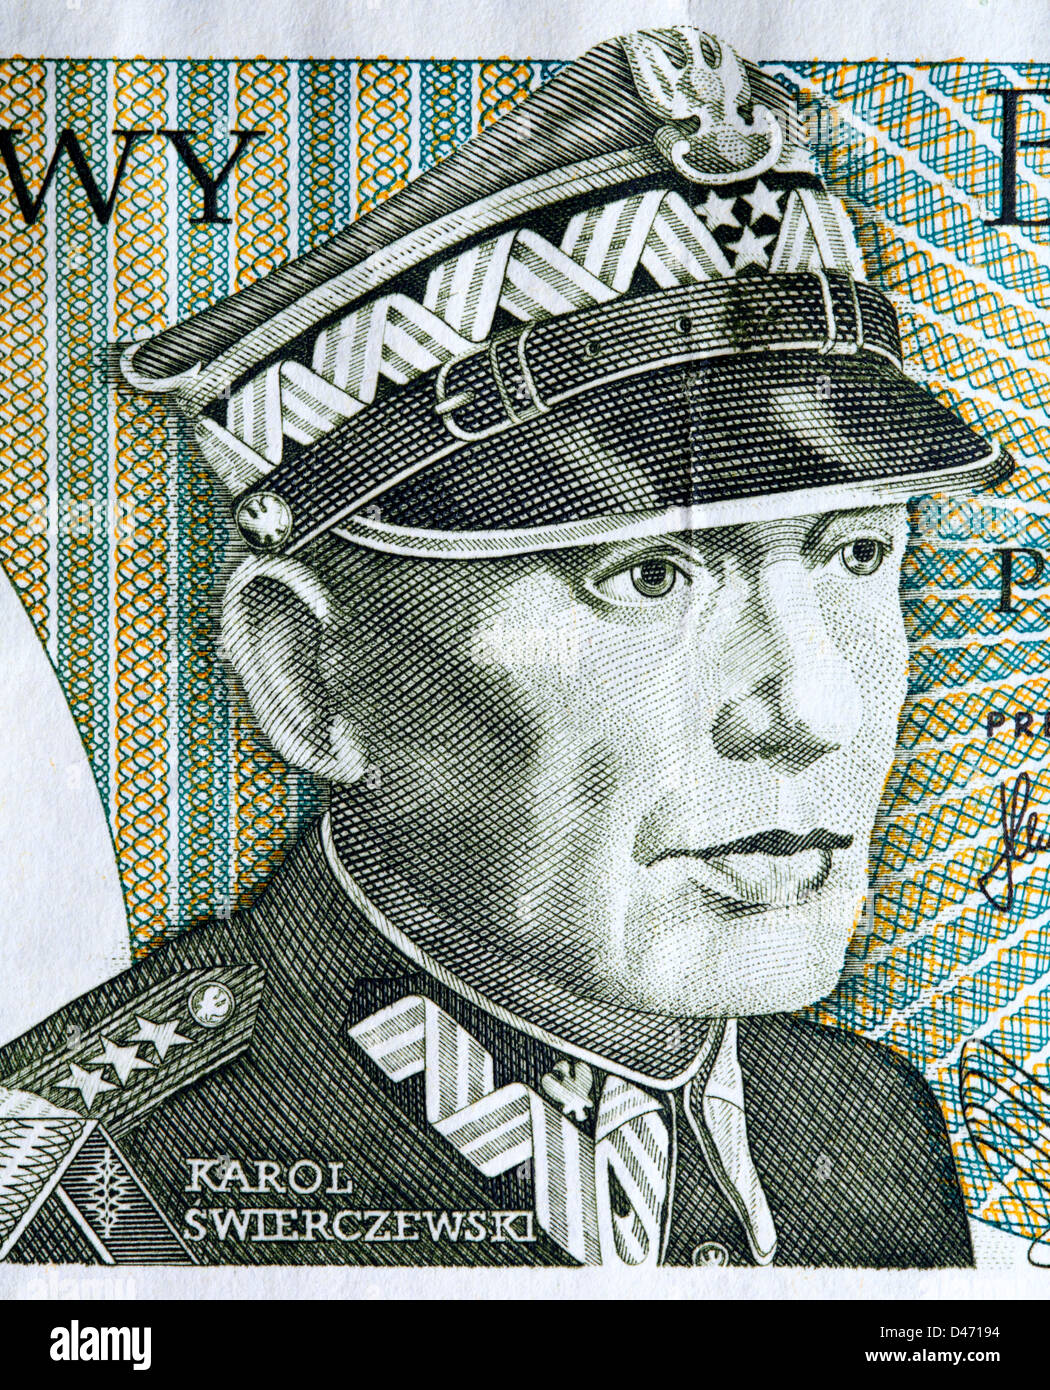 Portrait of General Karol Swierczewski from 50 Zlotych banknote, Poland, 1982 Stock Photo